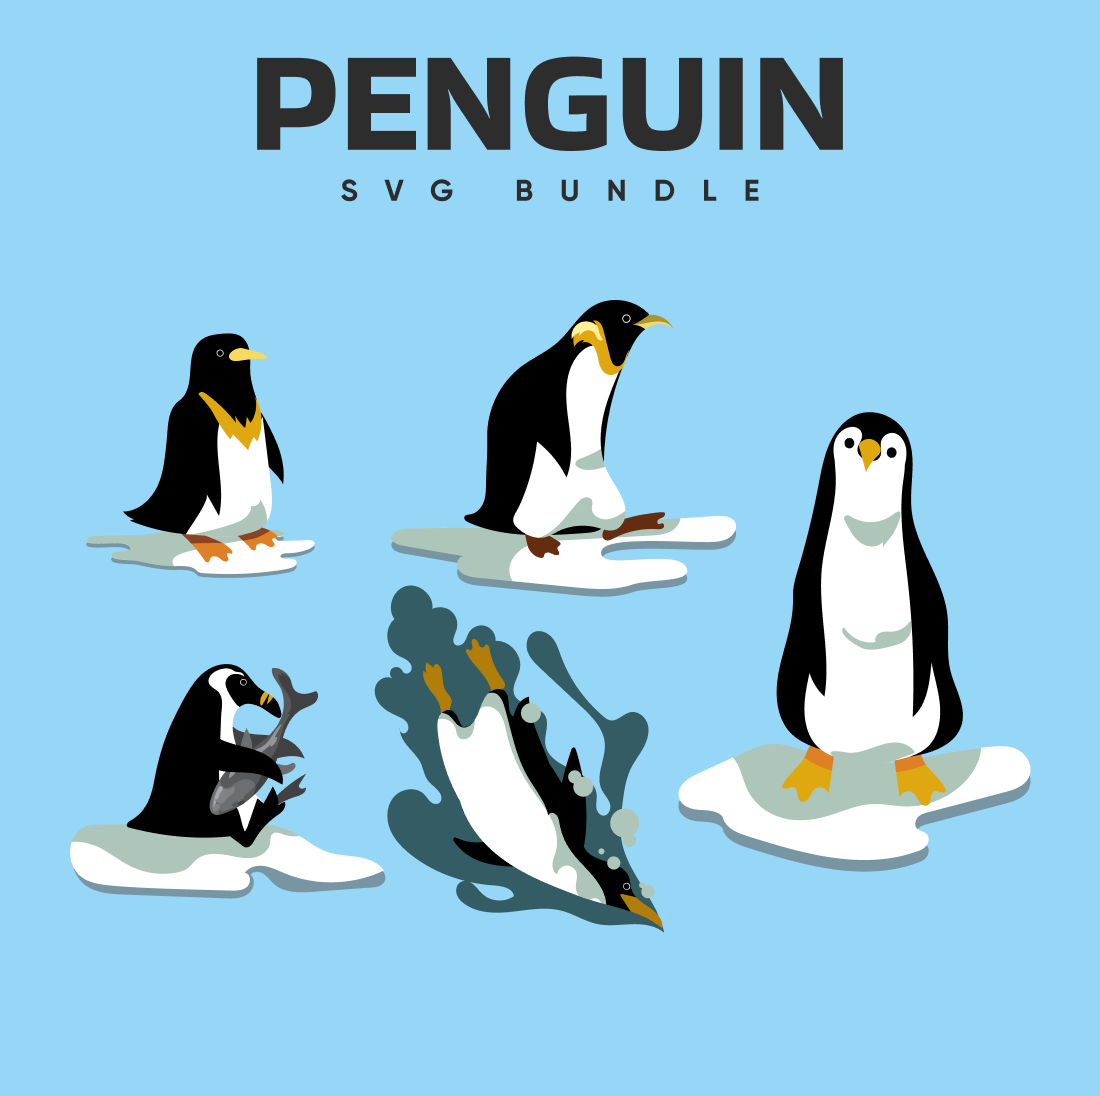 01. penguin svg bundle cover image.